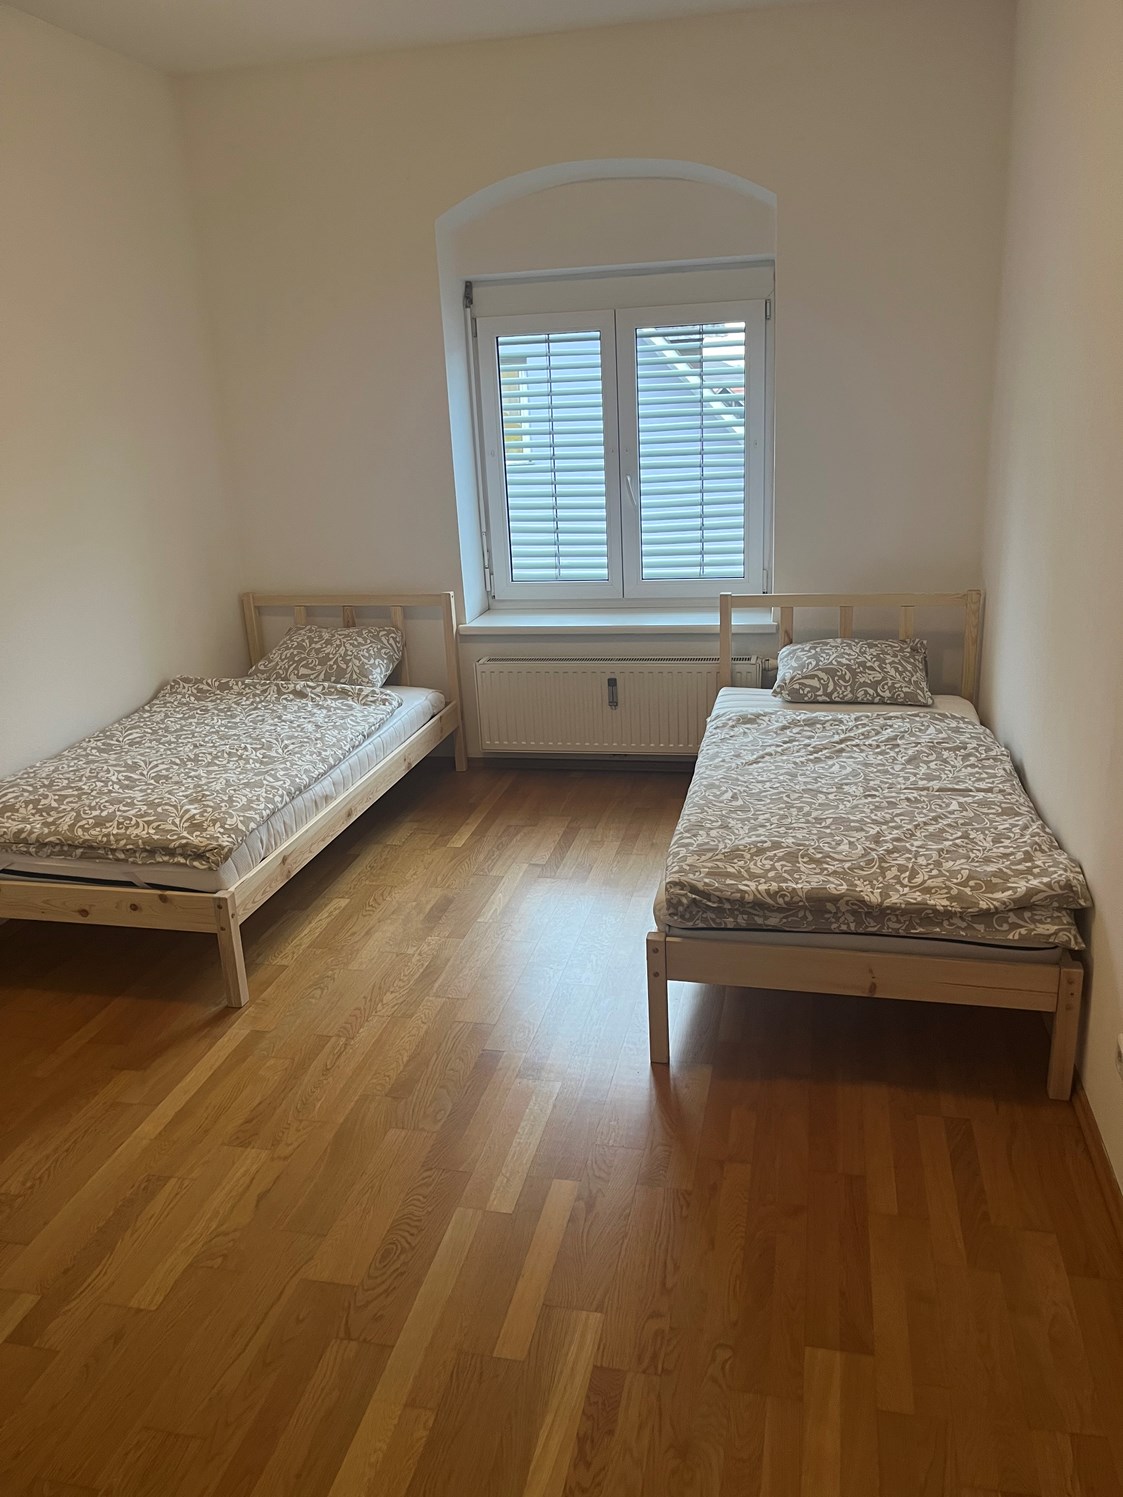 Monteurzimmer: Zimmer mit Einzelbetten in der Monteurwohnung in Dobl-Zwaring. - Azra Sinanovic